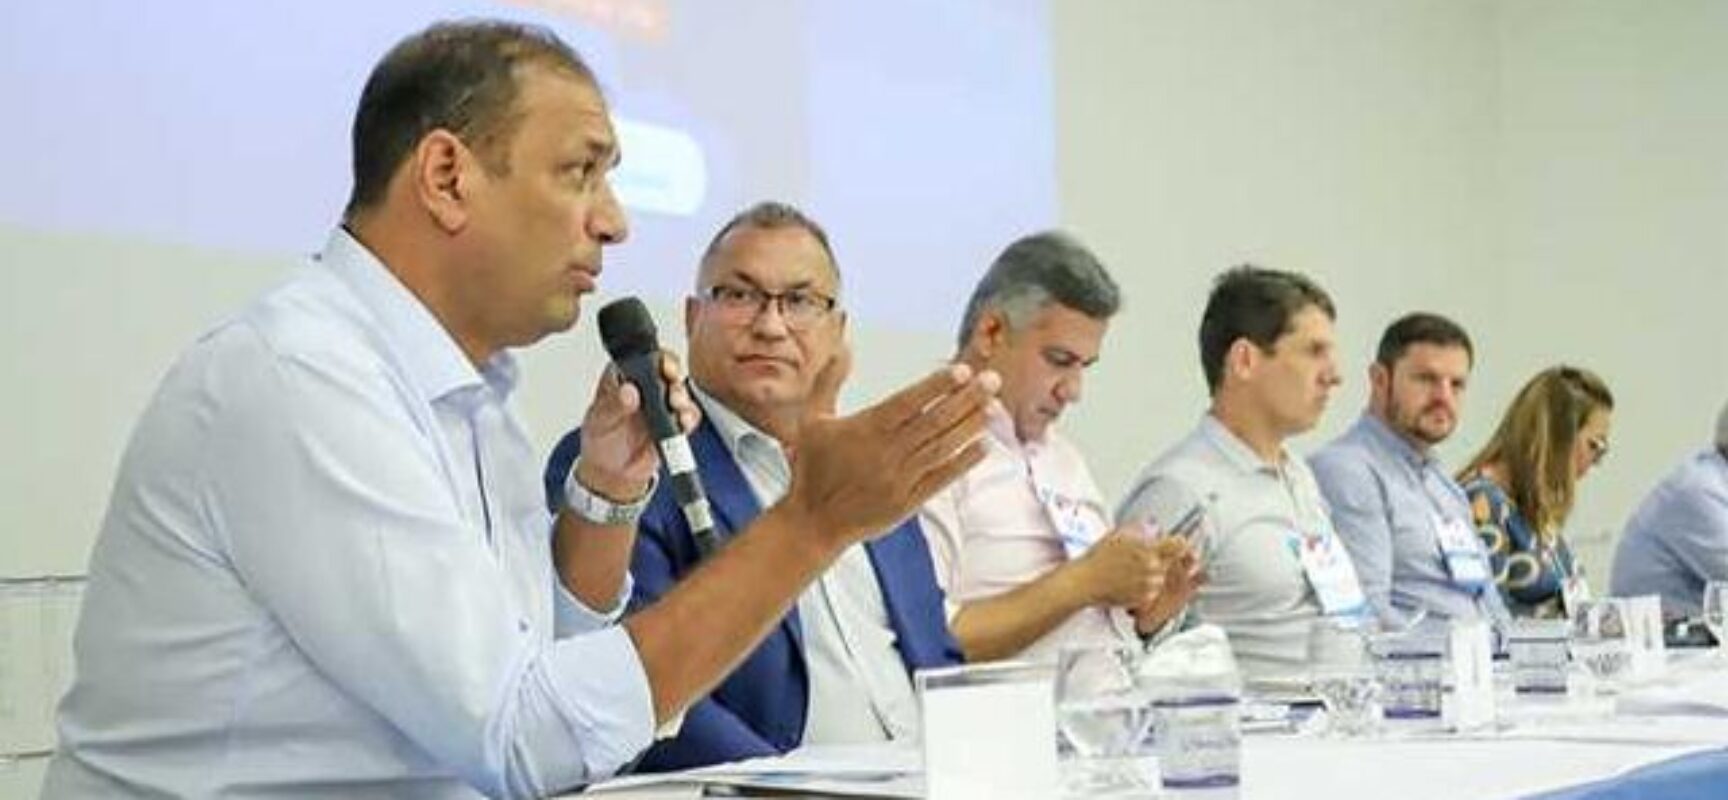 Em Salvador, prefeito Mário Alexandre se reúne com membros da UPB e endossa pautas municipalistas